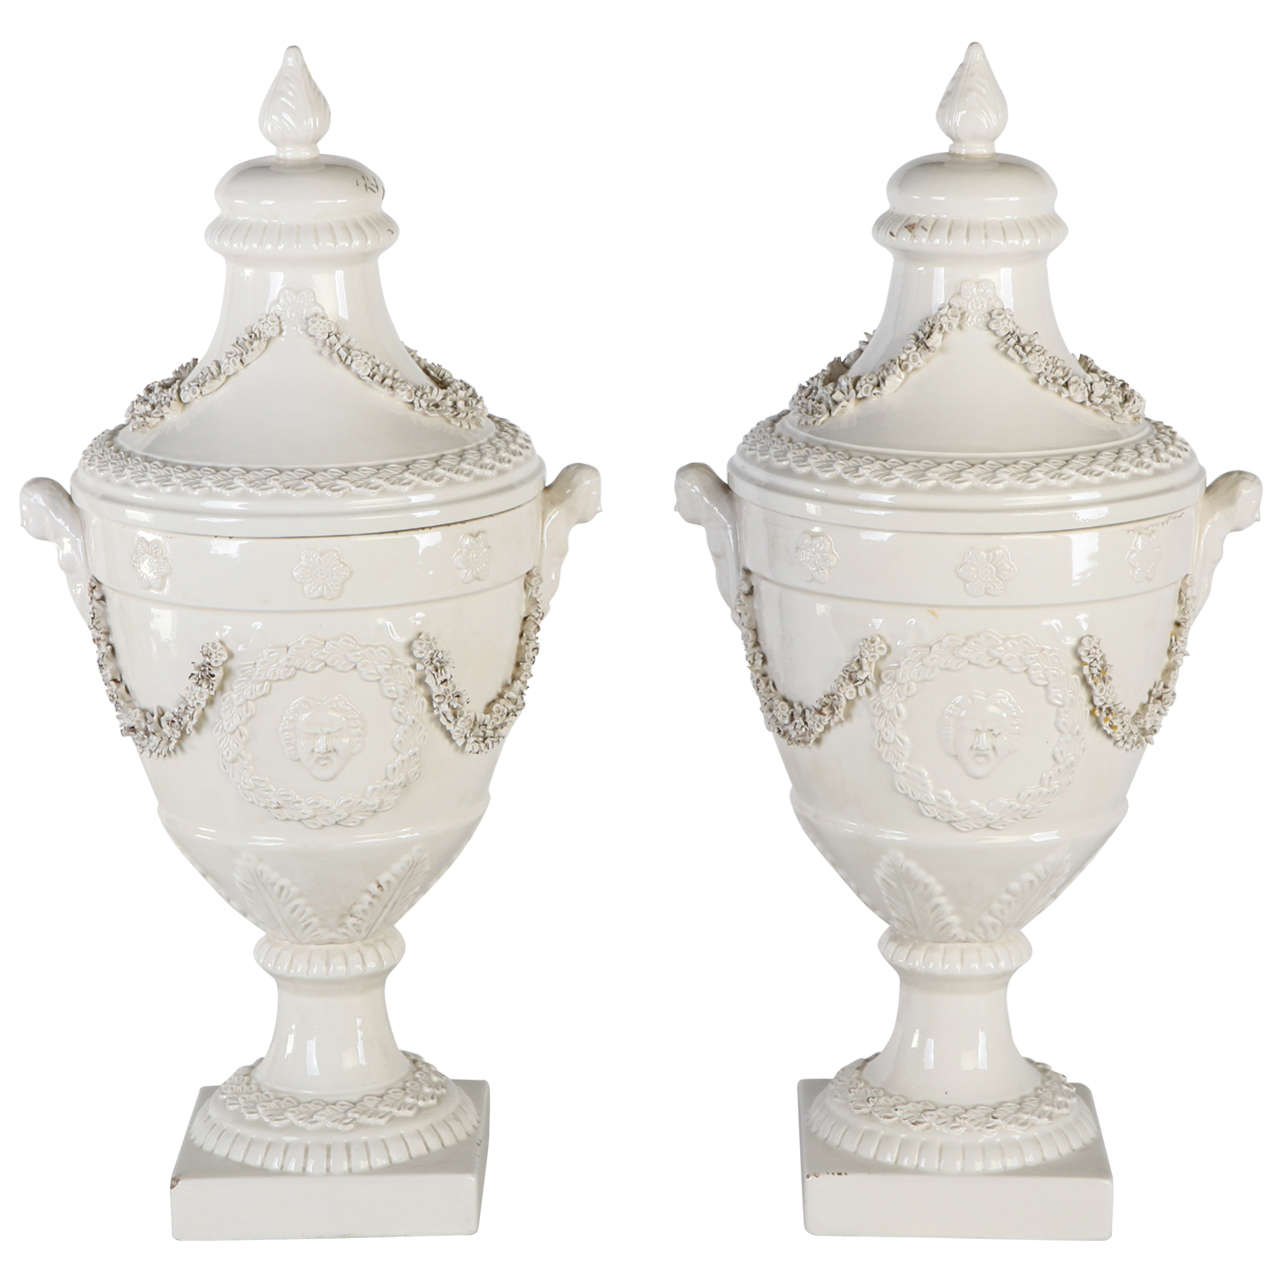  Pair of Italian, White Ceramic  Urn Vases